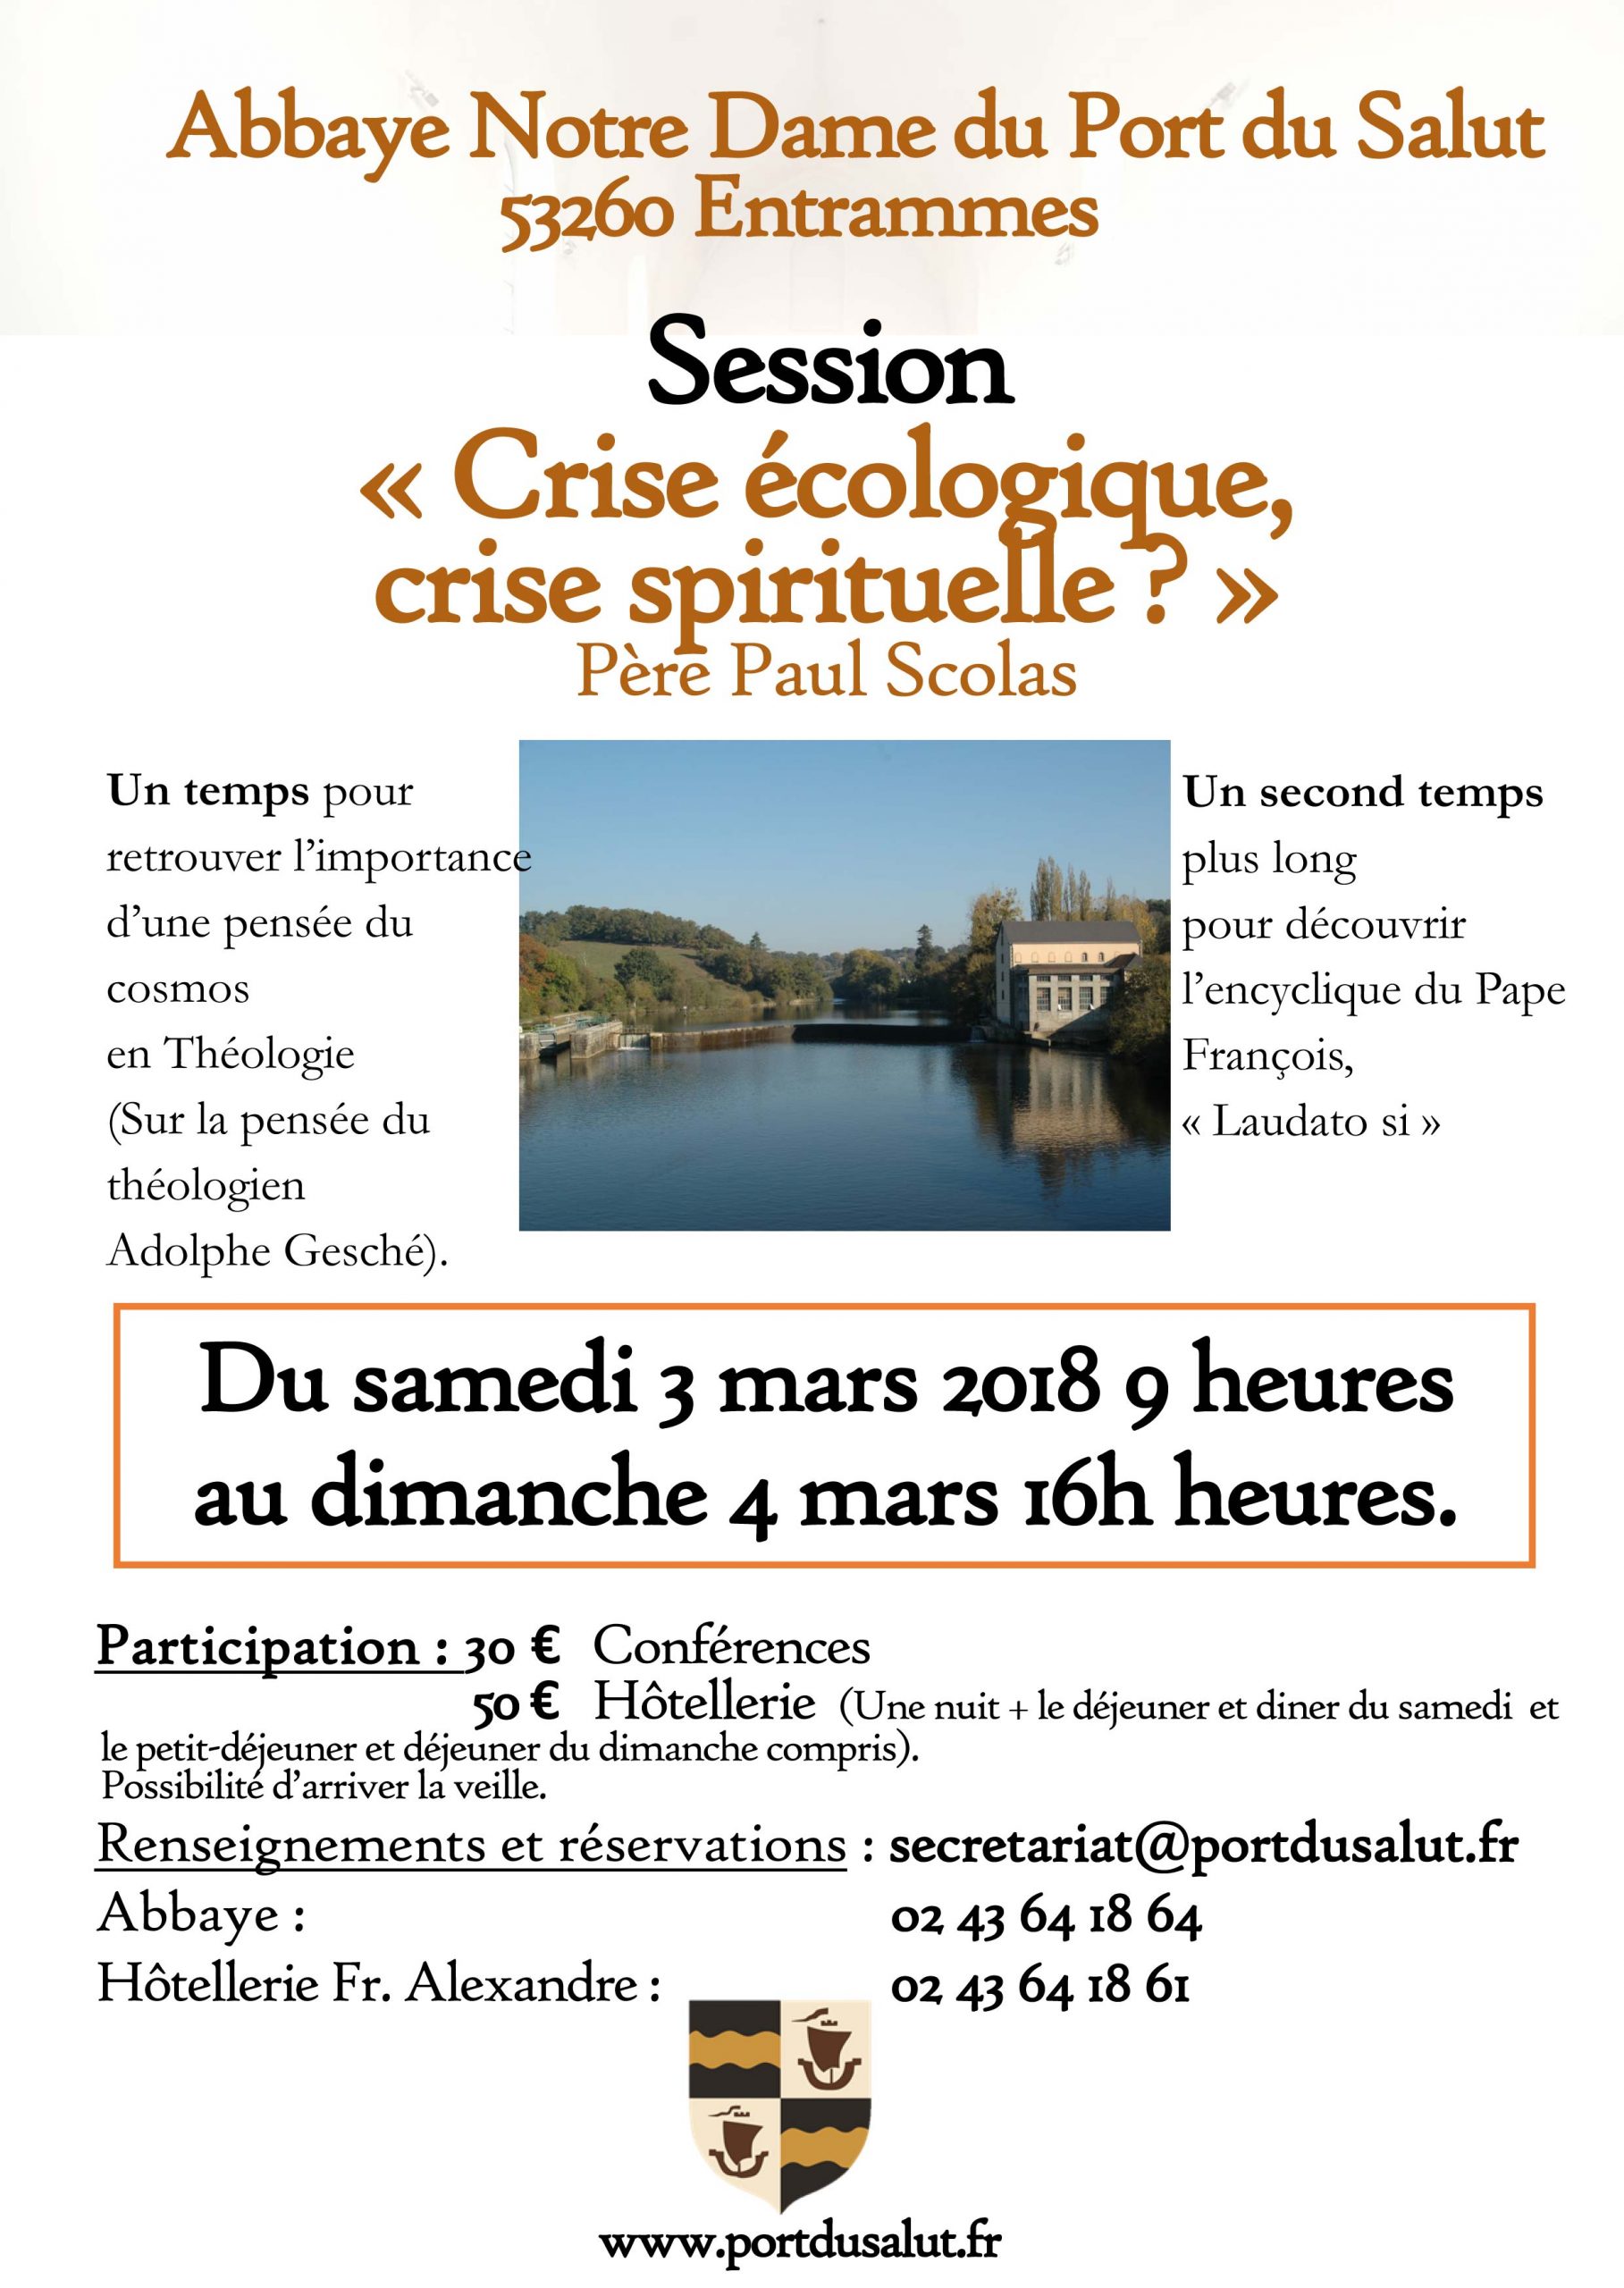 « Crise écologique, crise spirituelle ? » – Retraite à l’Abbaye Notre-Dame du Port du Salut du 3 au 4 mars 2018